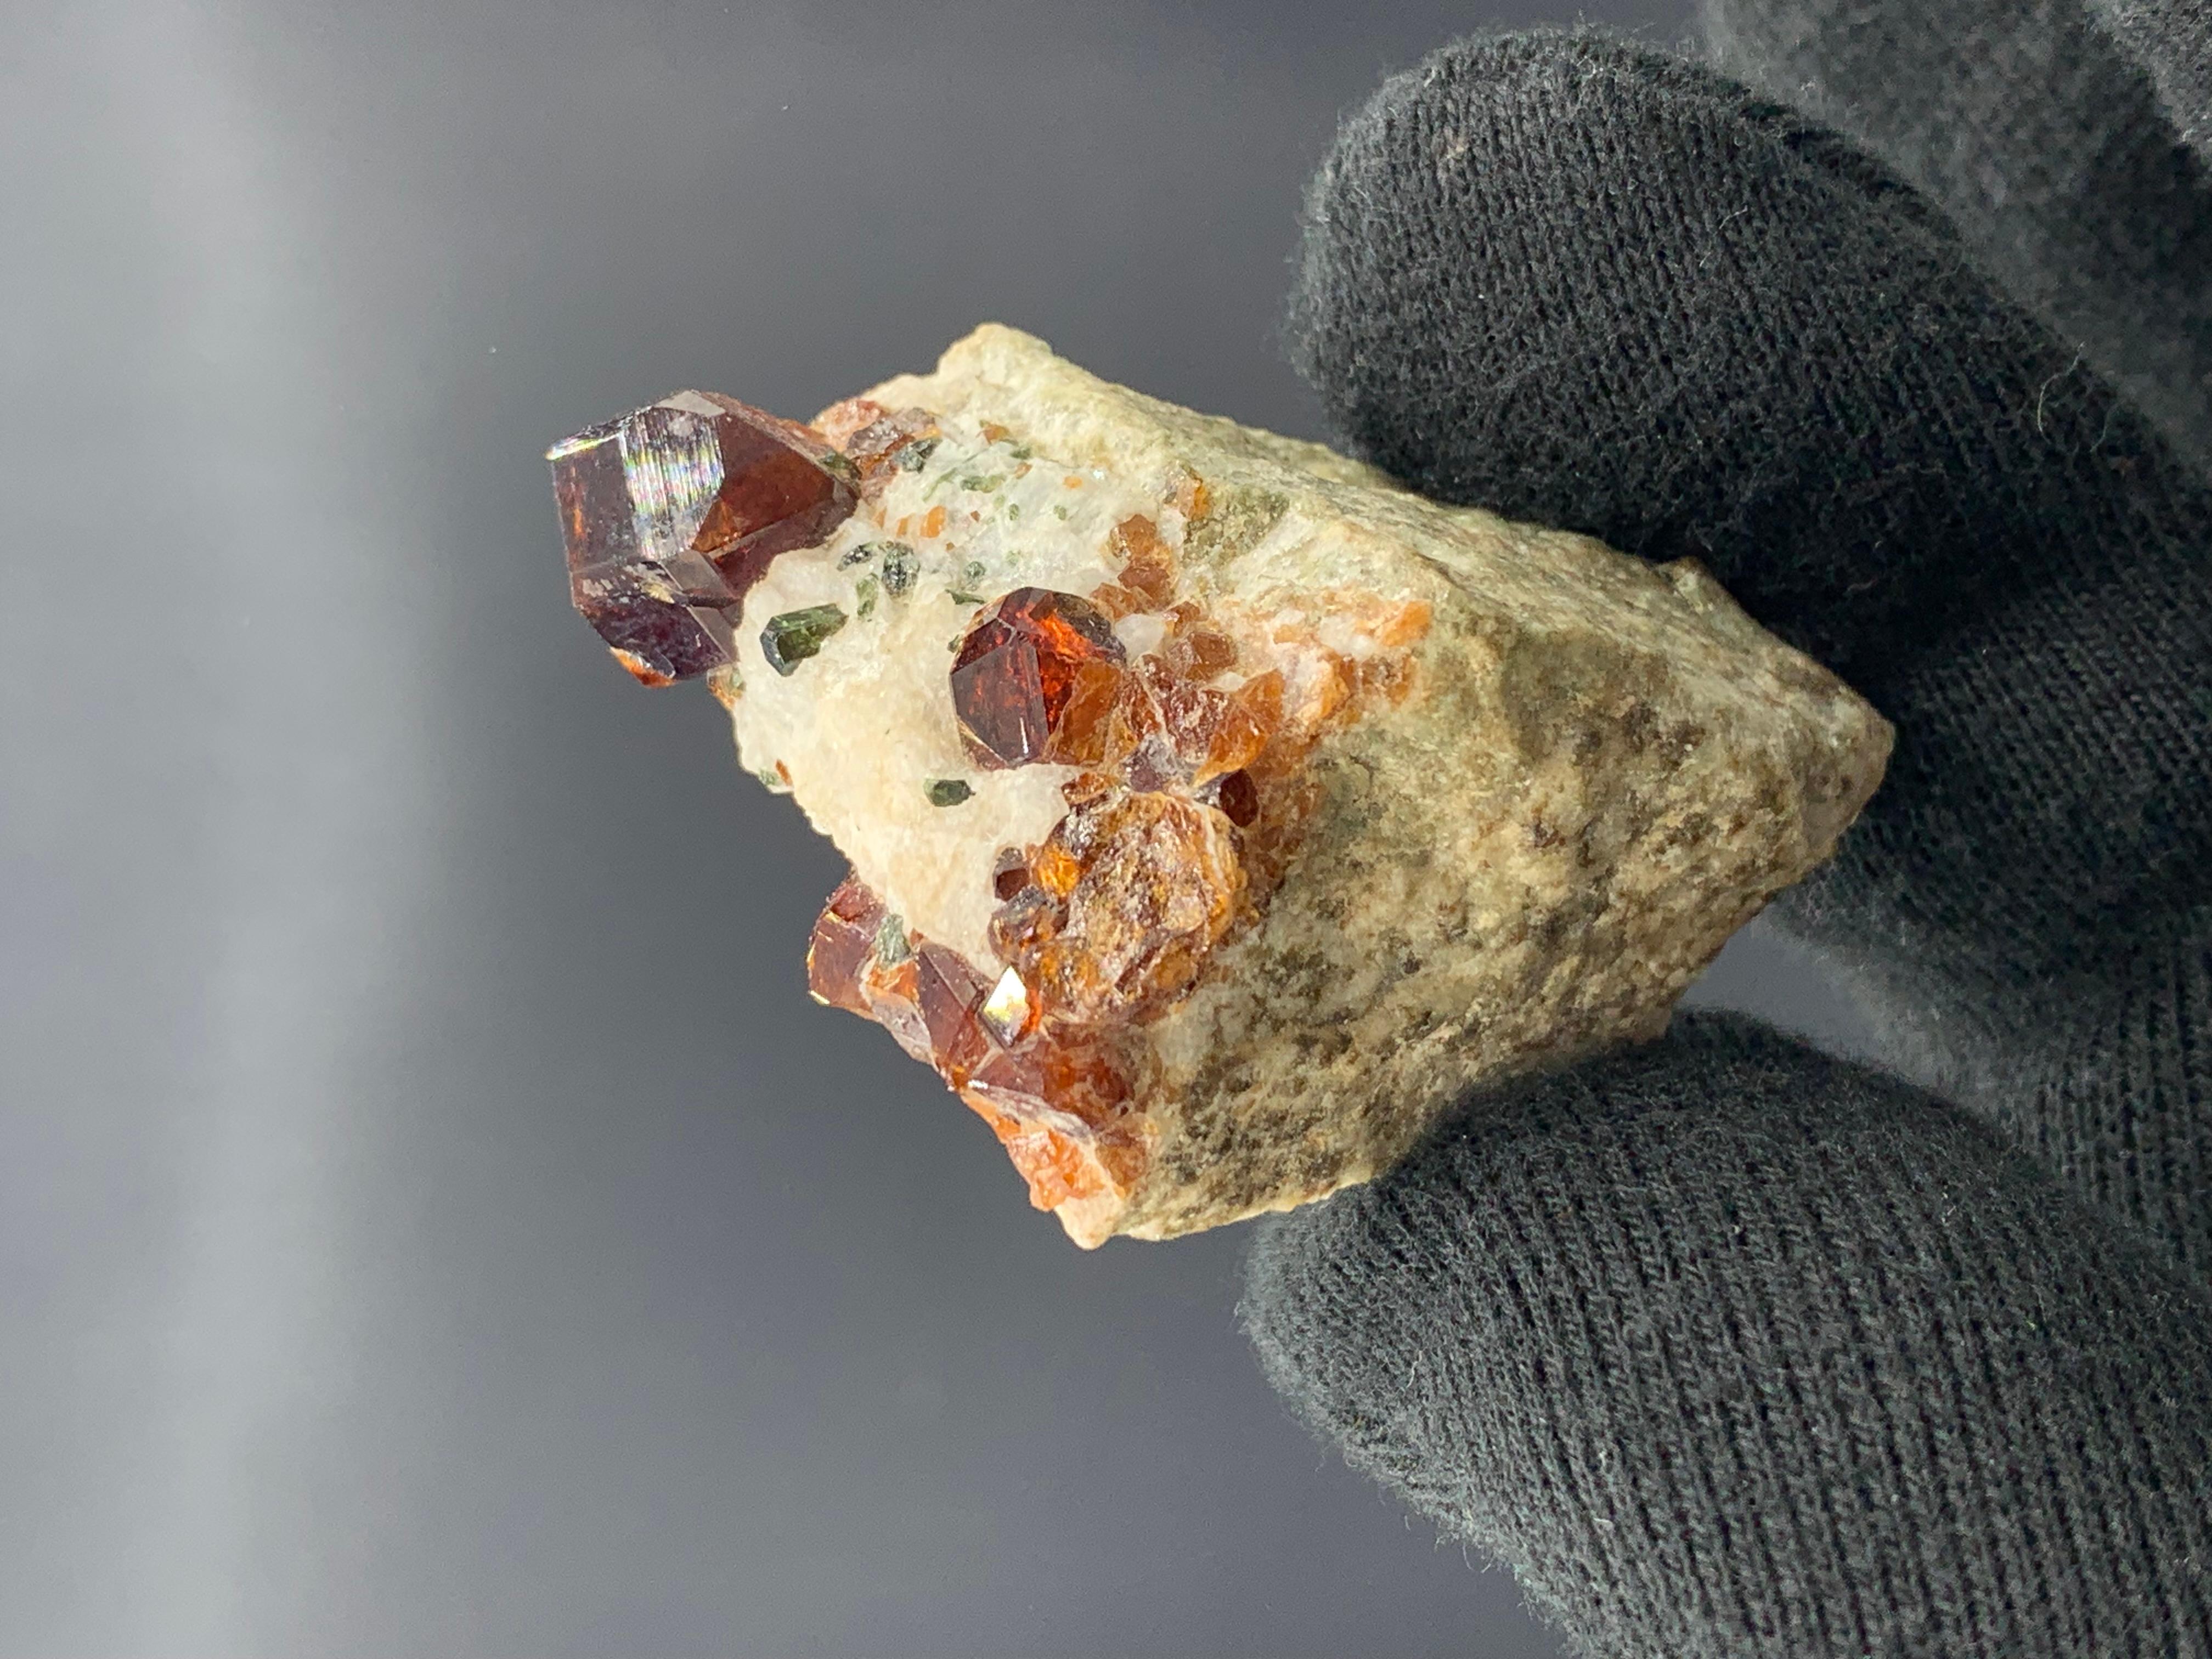 Élégant spécimen de grenat spessartite de 43,18 grammes provenant d'Afghanistan 

Poids : 43,18 grammes 
Dimension : 5,2 x 3,7 x 2,7 cm 
Origine : Afghanistan

La spessartite est synonyme de spessartine, bien que dans le commerce des pierres